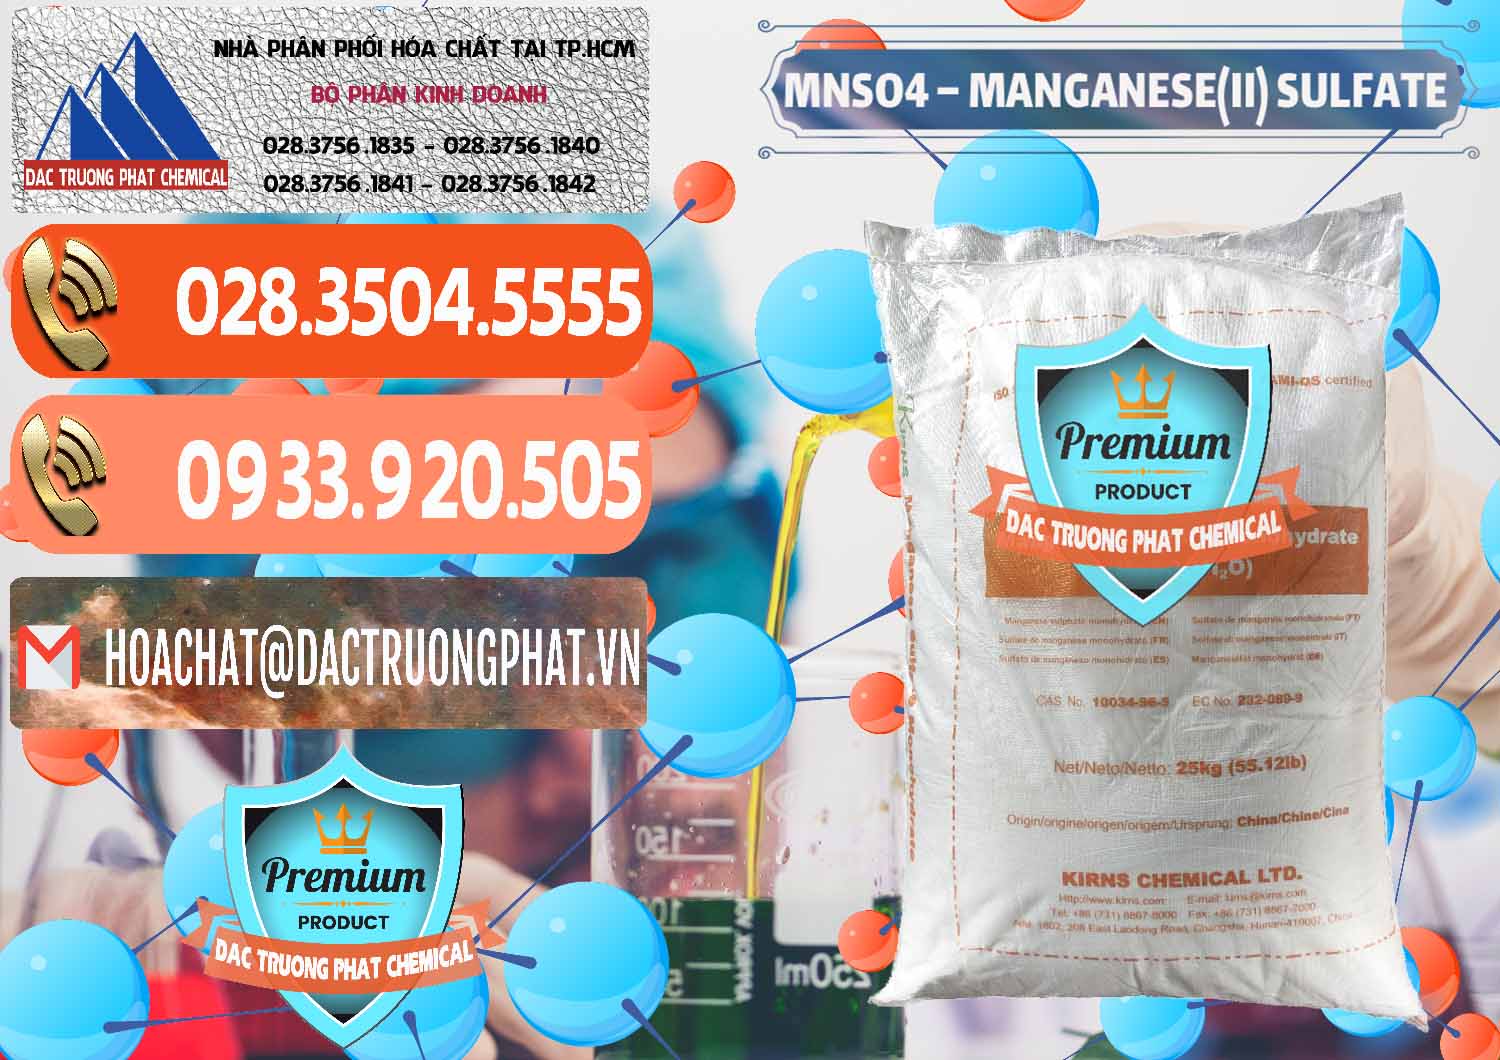 Cty chuyên cung ứng & bán MNSO4 – Manganese (II) Sulfate Kirns Trung Quốc China - 0095 - Cty chuyên phân phối ( kinh doanh ) hóa chất tại TP.HCM - hoachatmientay.com